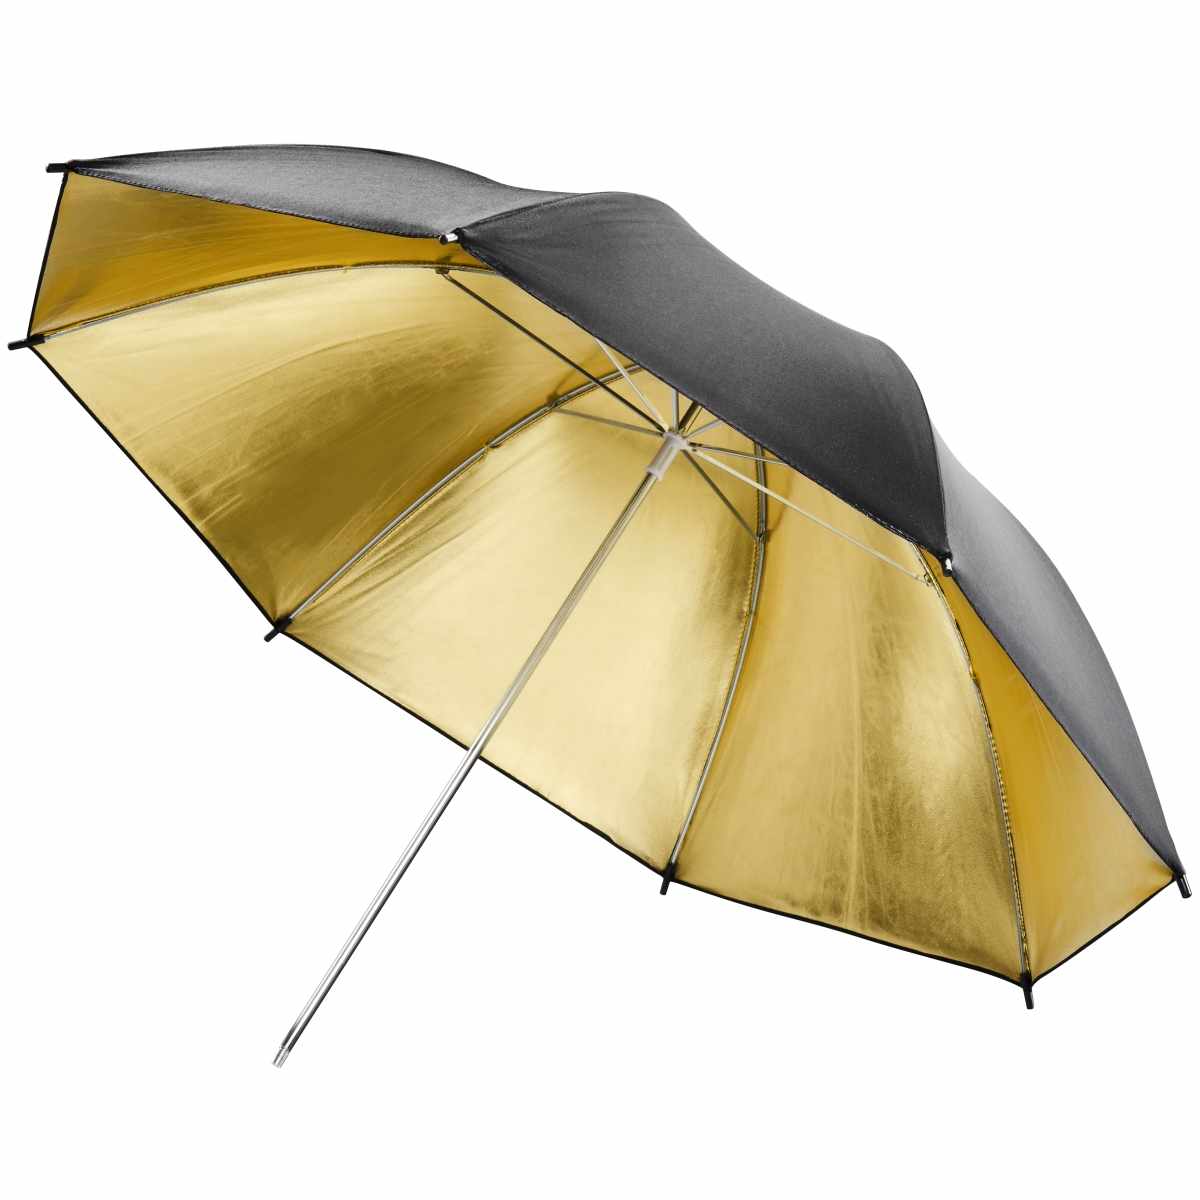 Walimex Reflex Umbrella gold, 84cm